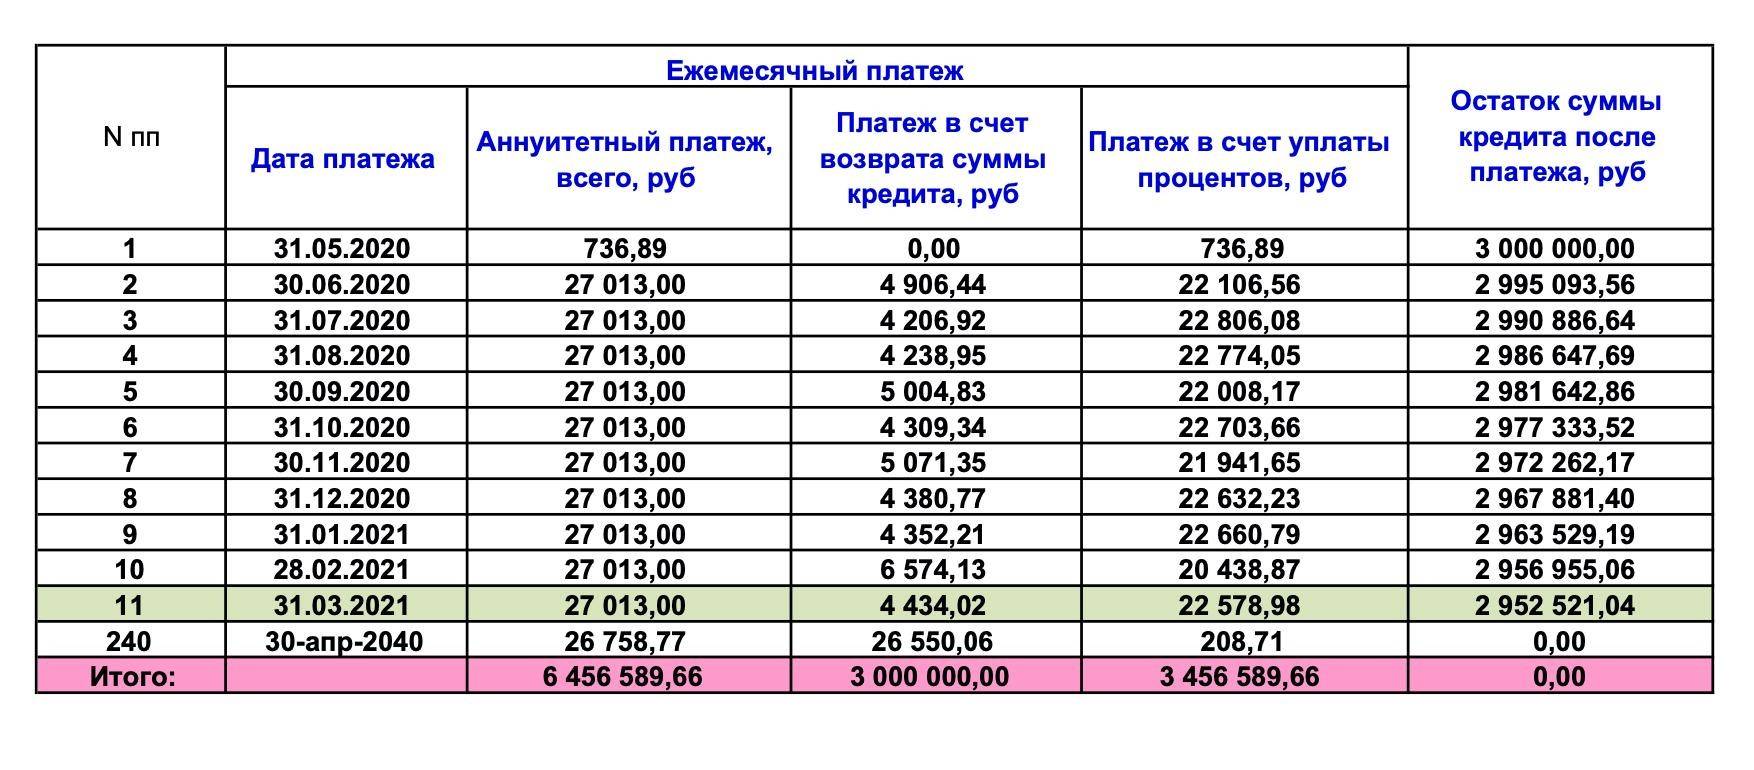 Россияне снова закредитовываются: объясняем, к чему приведет новый рост популярности банковских займов